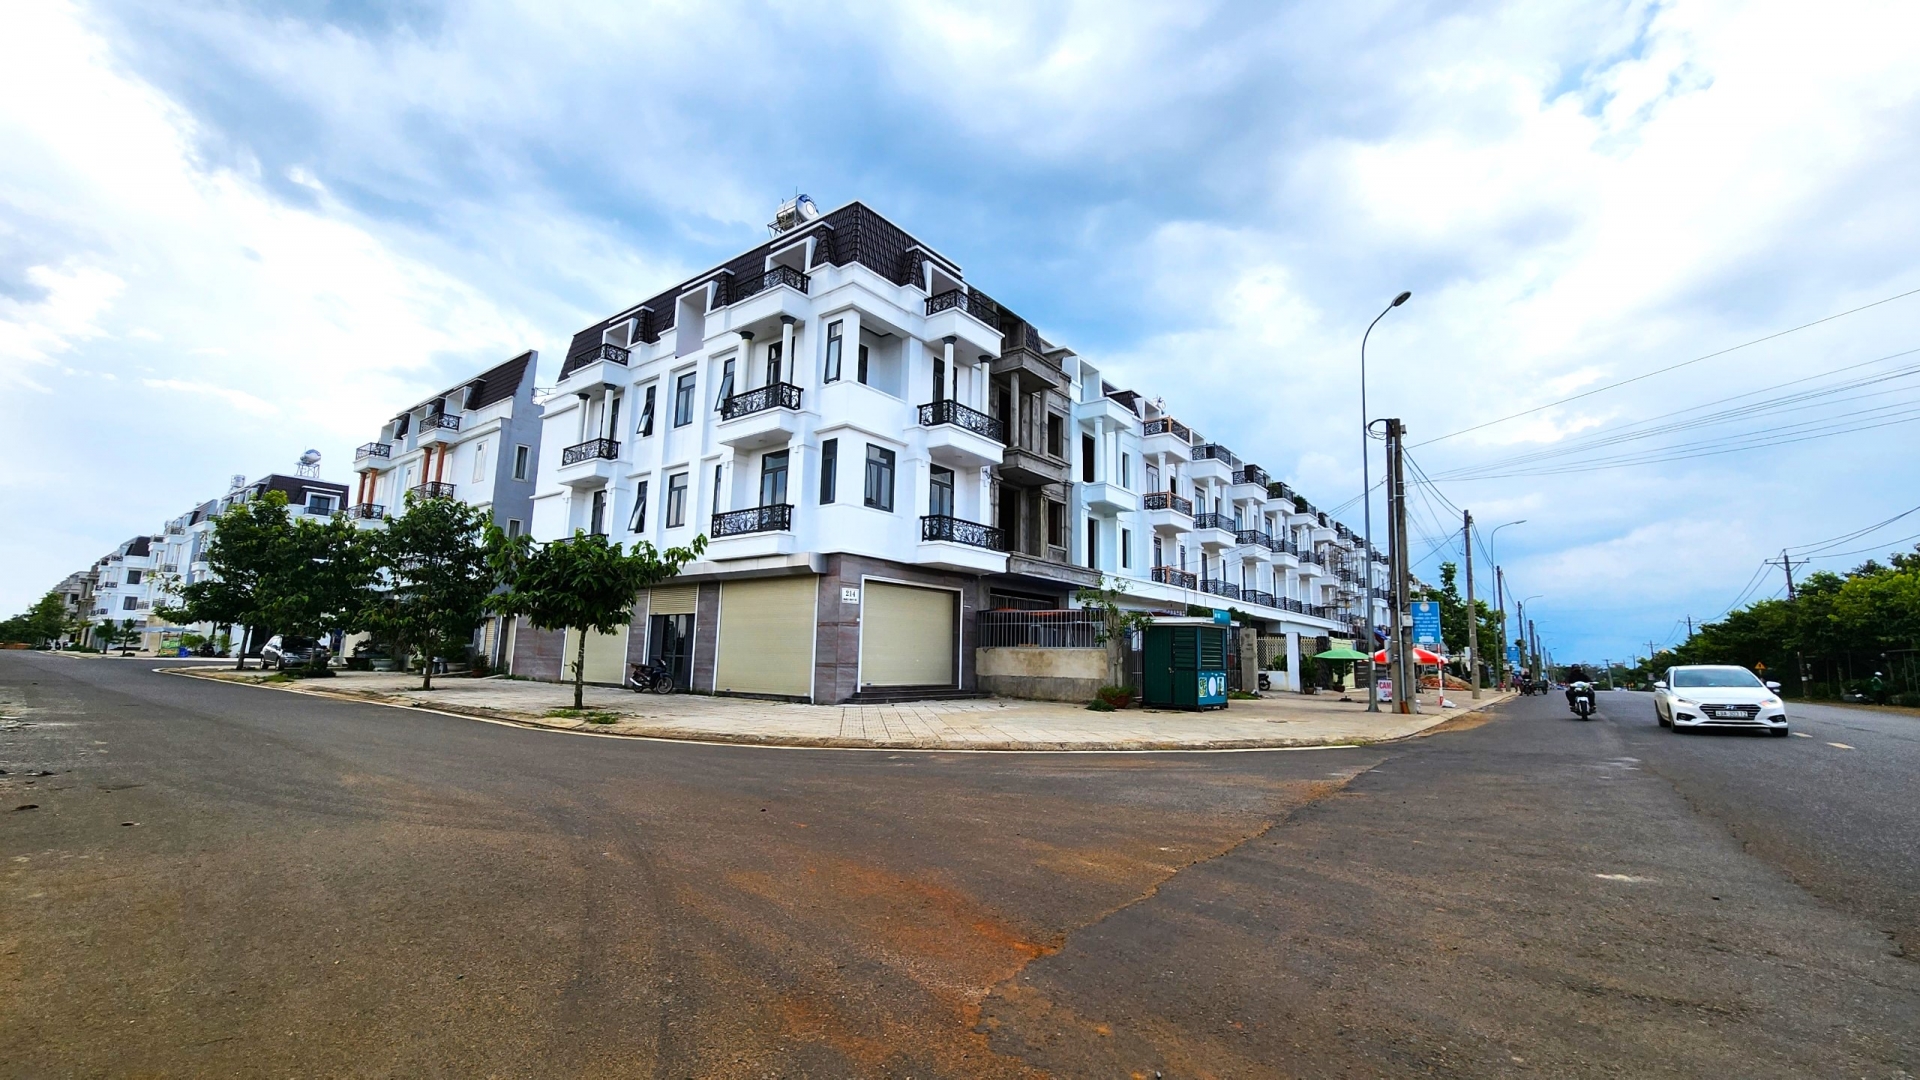 Khu đô thị mới đường Lý Thường Kiệt (phường Lộc Phát) là một trong những dự án bất độc sản được cấp phép và được đầu tư xây dựng bài bản, hiện đại